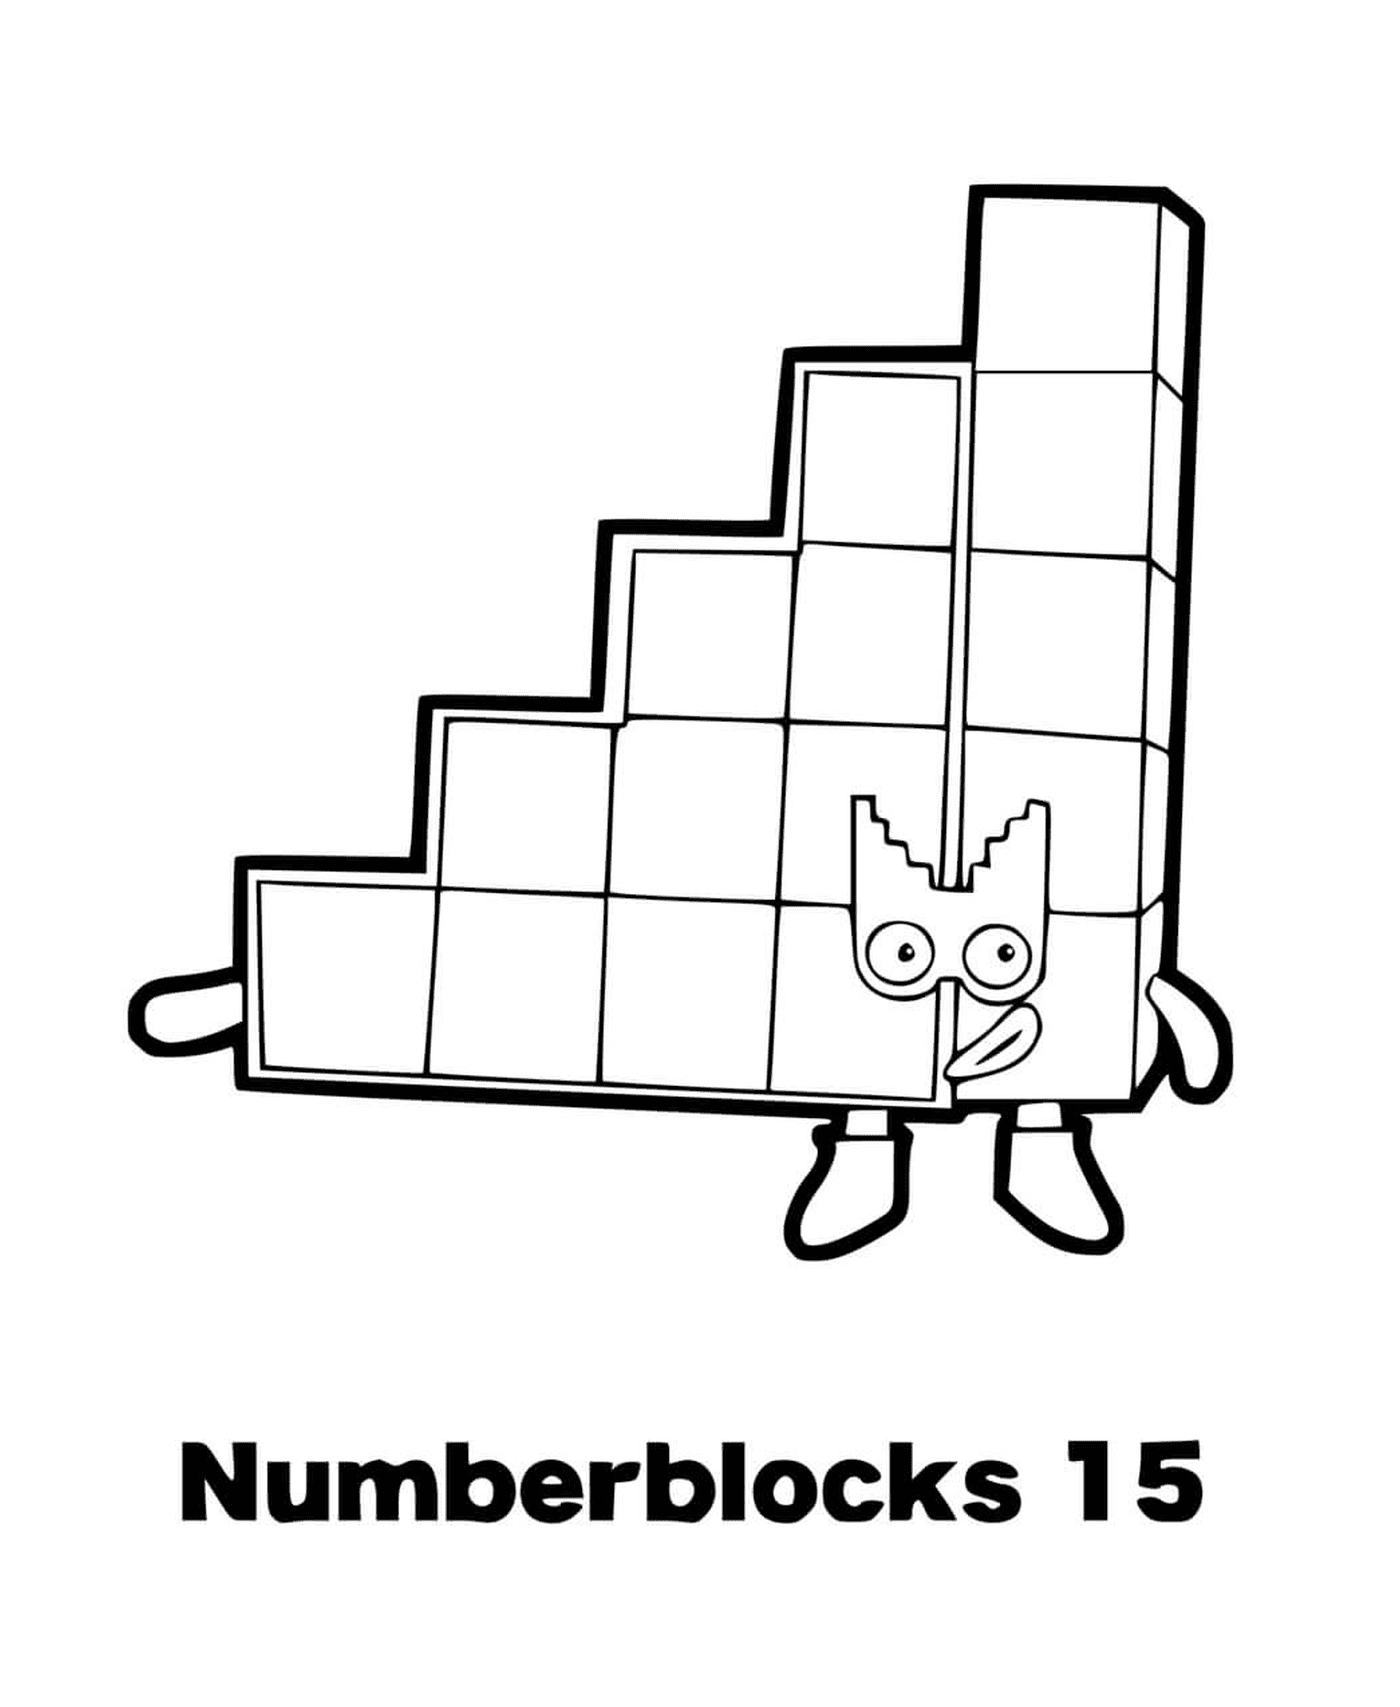  Numberblocks número 15, carácter animado 